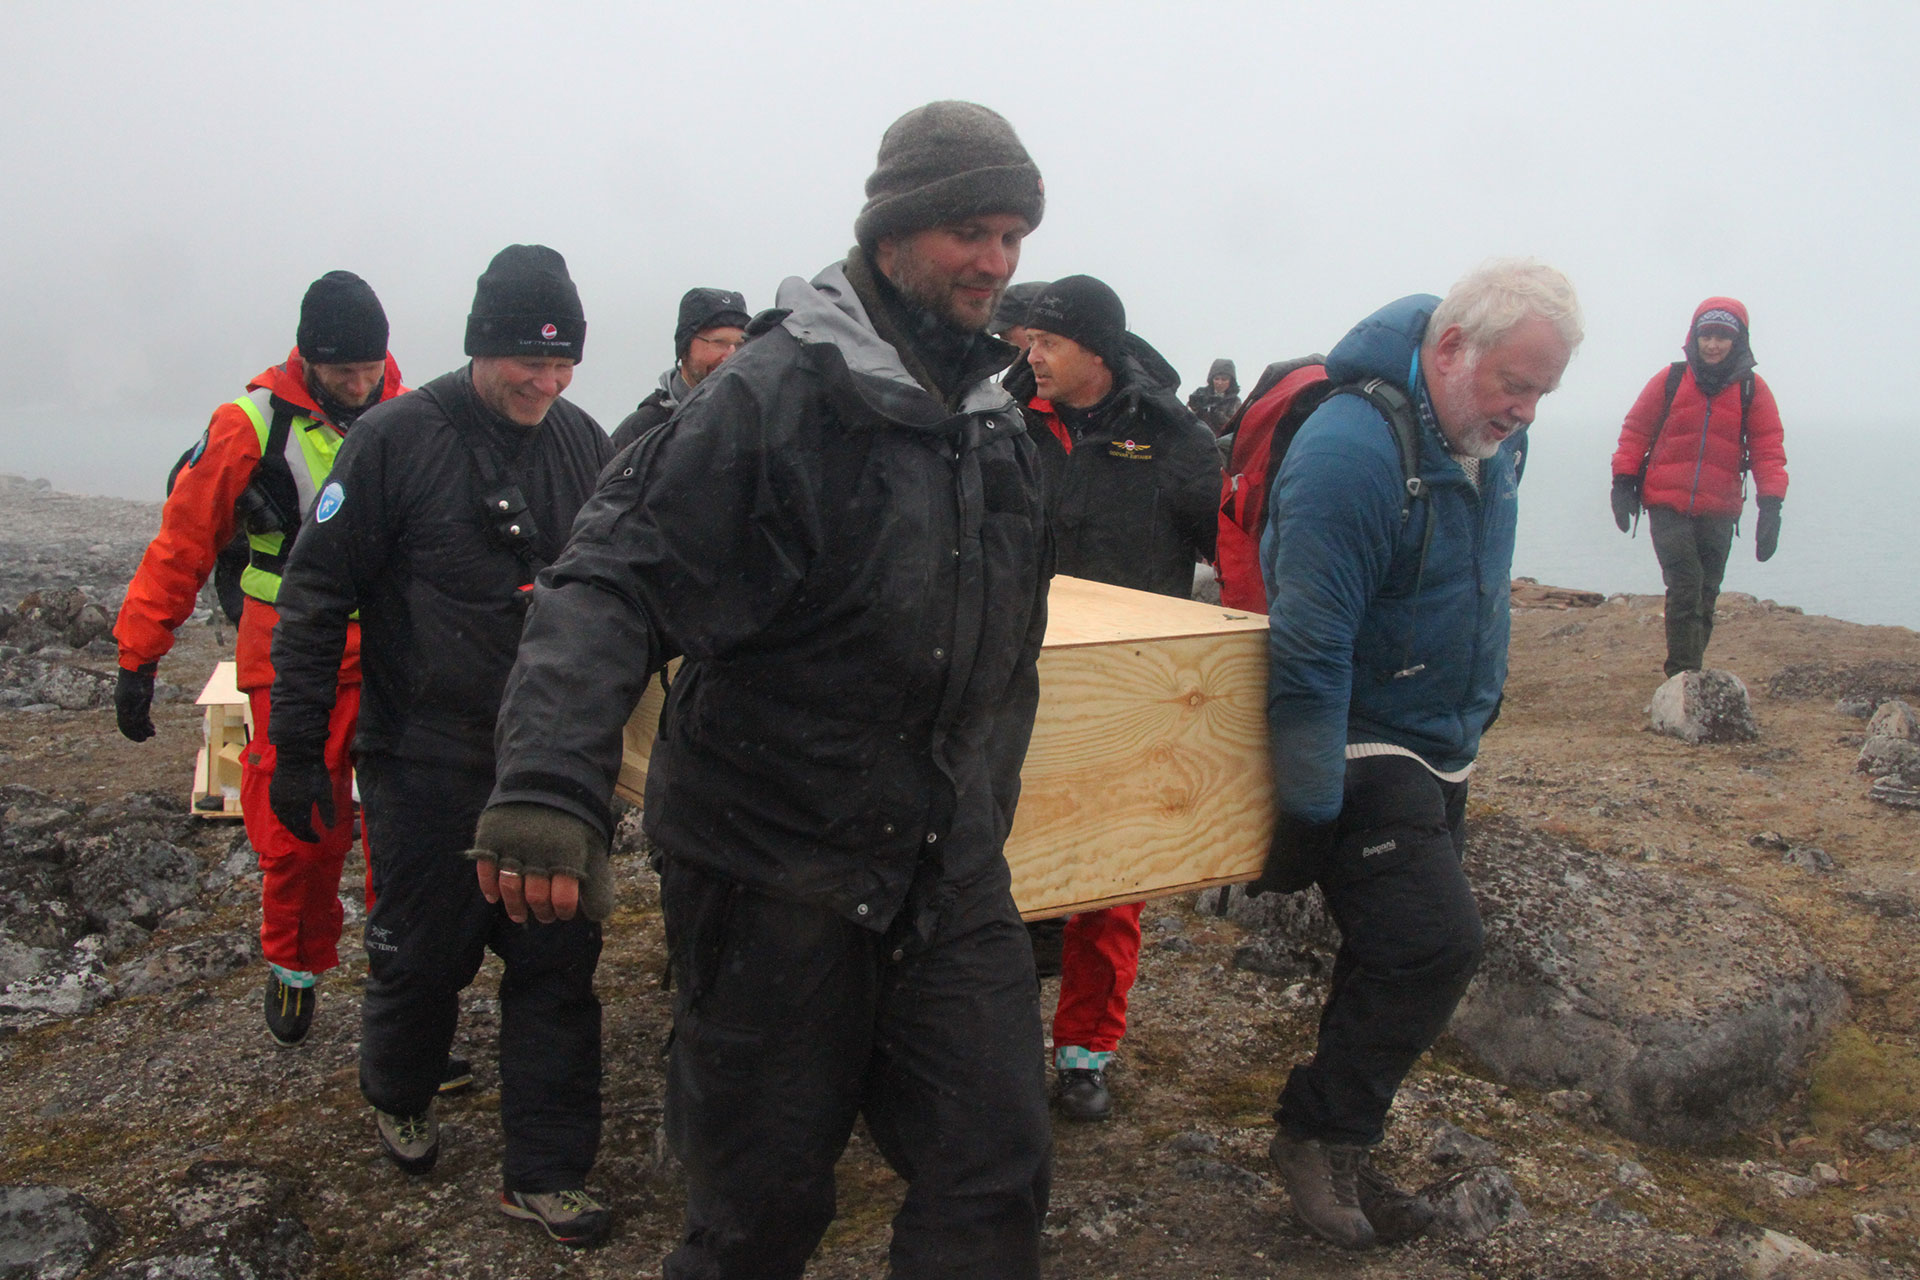 Bilde hvor kisten som inneholder restene fra en av hvalfangergravene bæres til helikopteret som skal frakte den til Svalbard museum. Inne i den nye kisten ligger hele den gamle graven, inkludert restene av gammel kiste og omkringliggende jord. Foto: Siri Wolland, Riksantikvaren